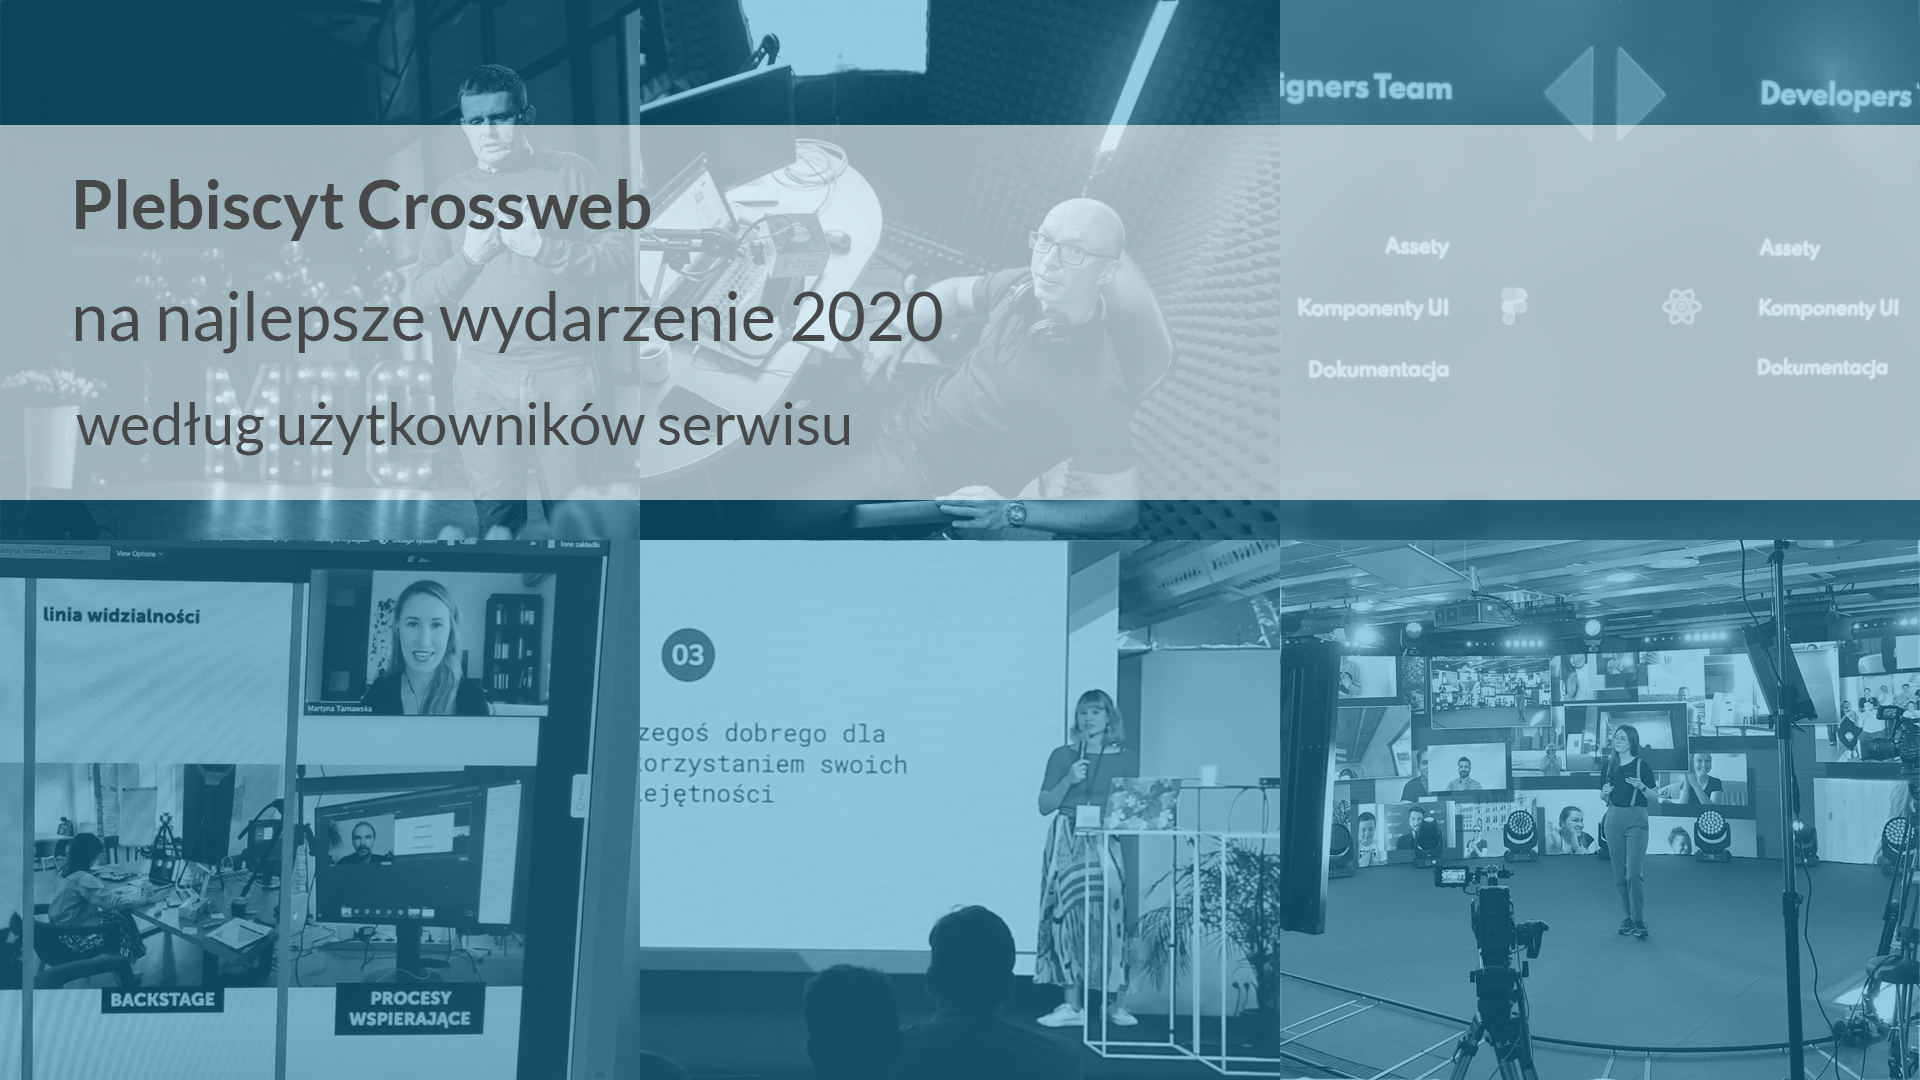 Plebiscyt Crossweb na najlepsze wydarzenie 2020 według użytkowników